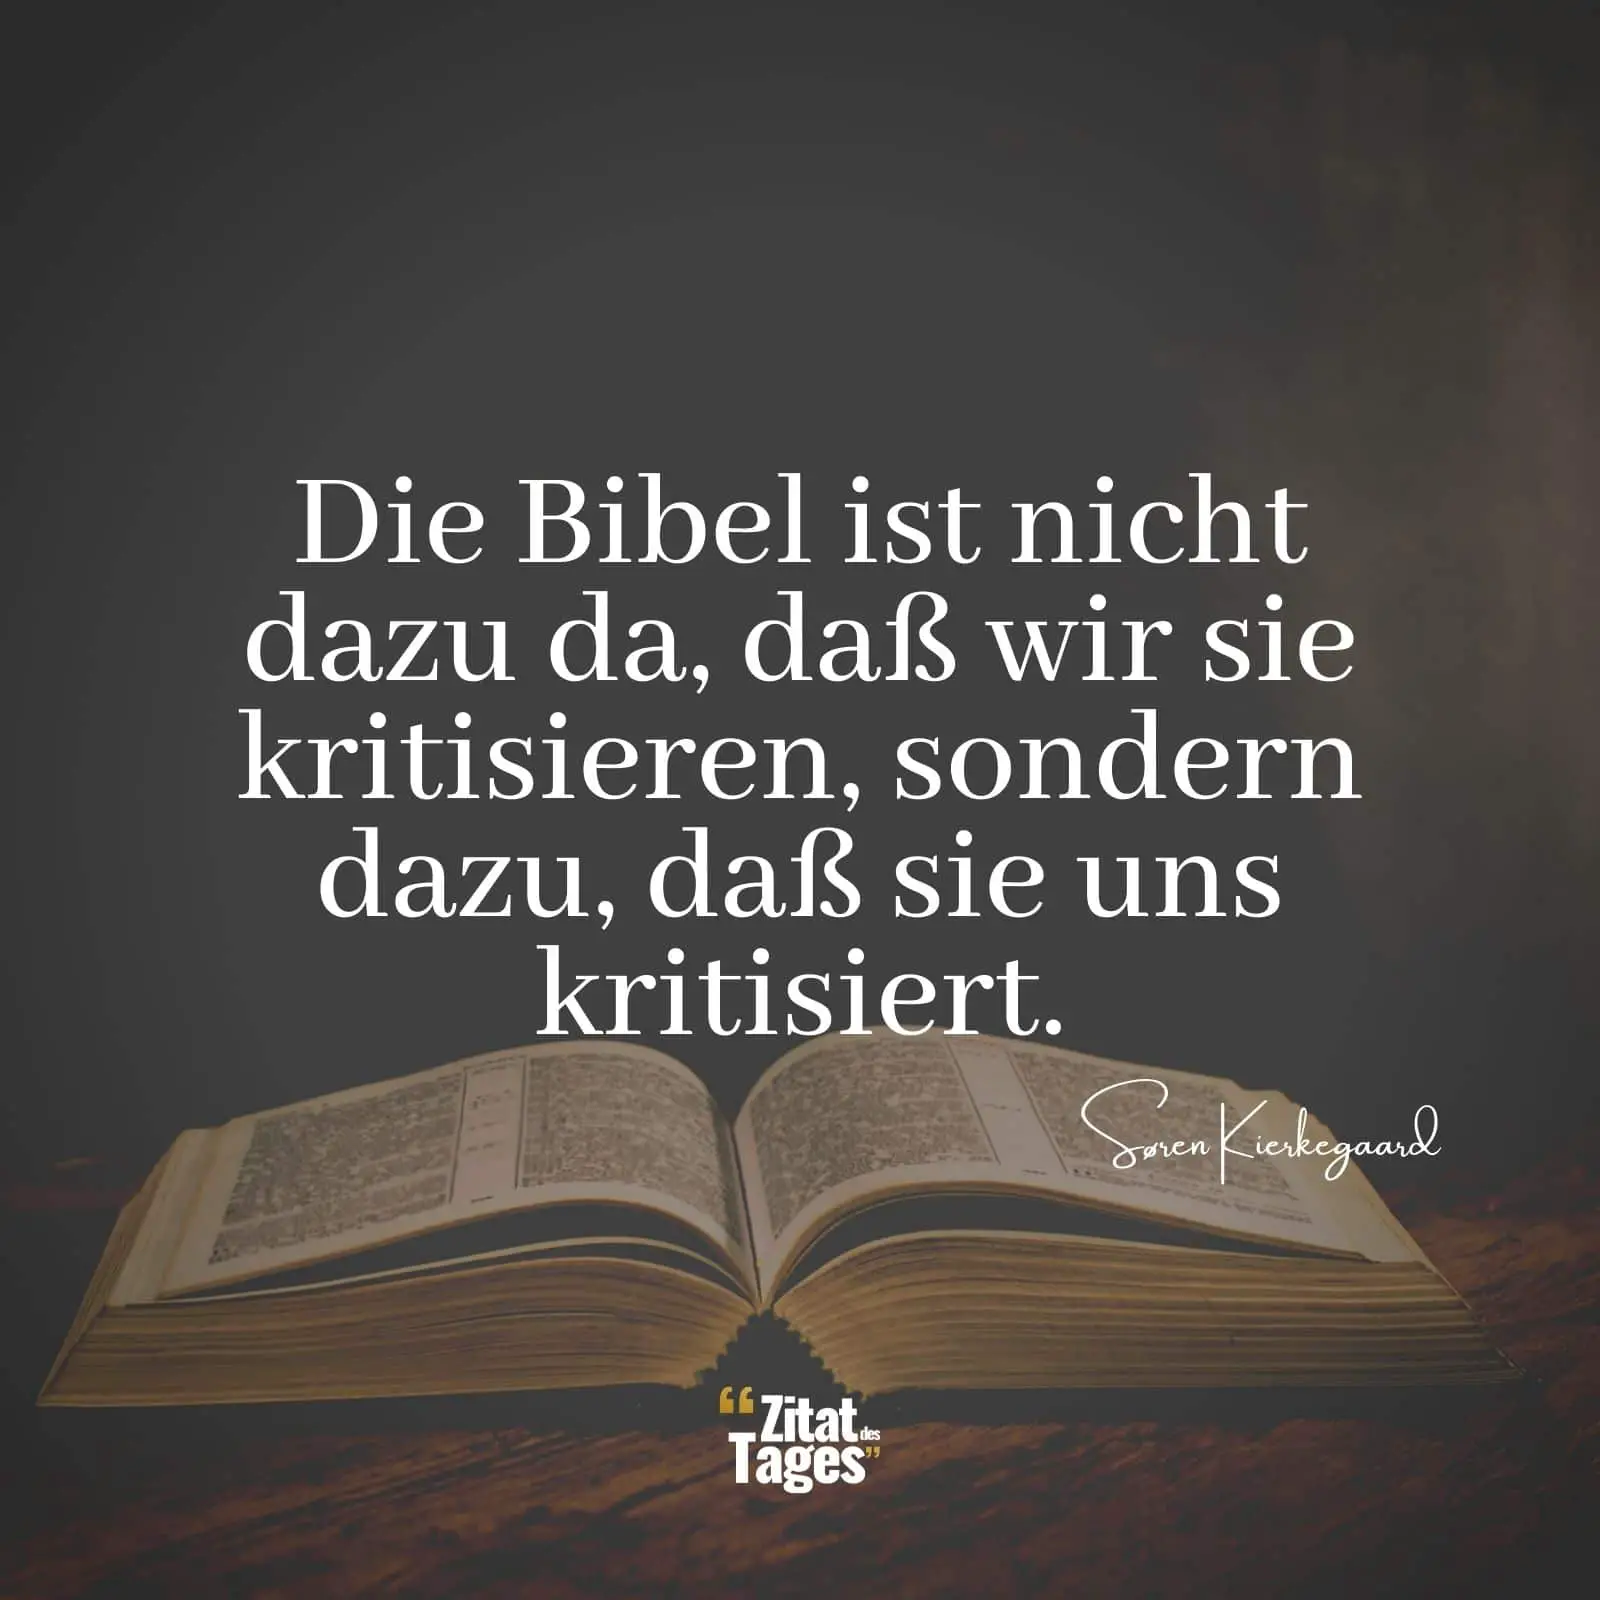 Die Bibel ist nicht dazu da, daß wir sie kritisieren, sondern dazu, daß sie uns kritisiert. - Søren Kierkegaard